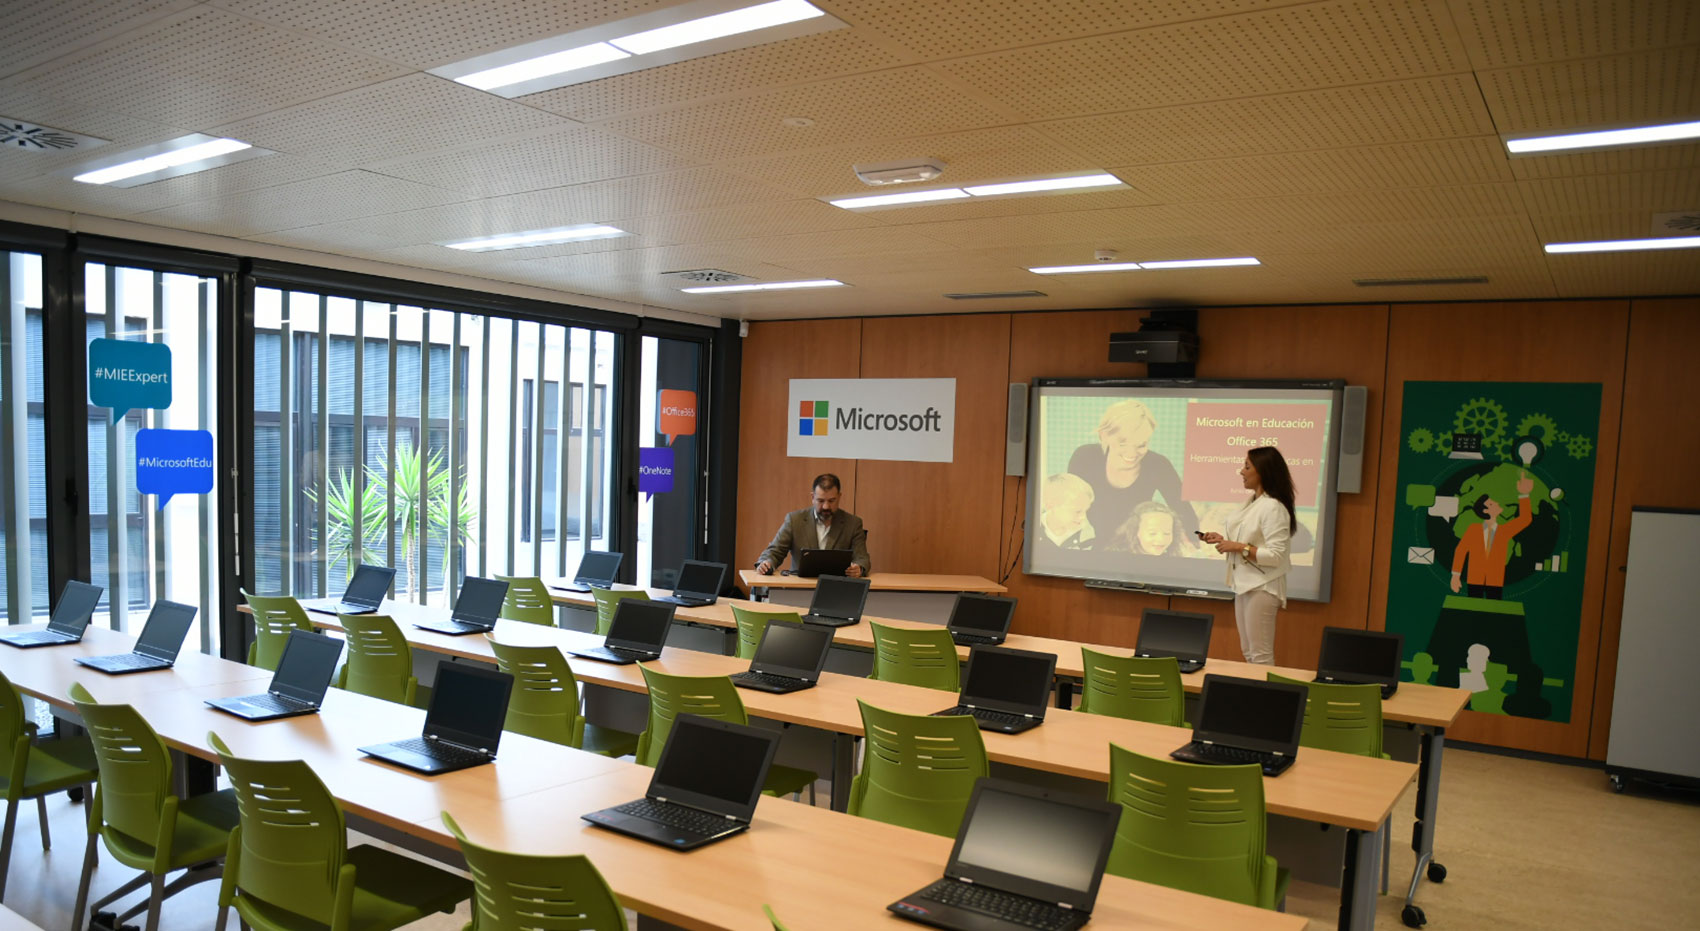 La nueva aula est totalmente equipada con las ltimas novedades de la plataforma tecnolgica para educacin de Microsoft...